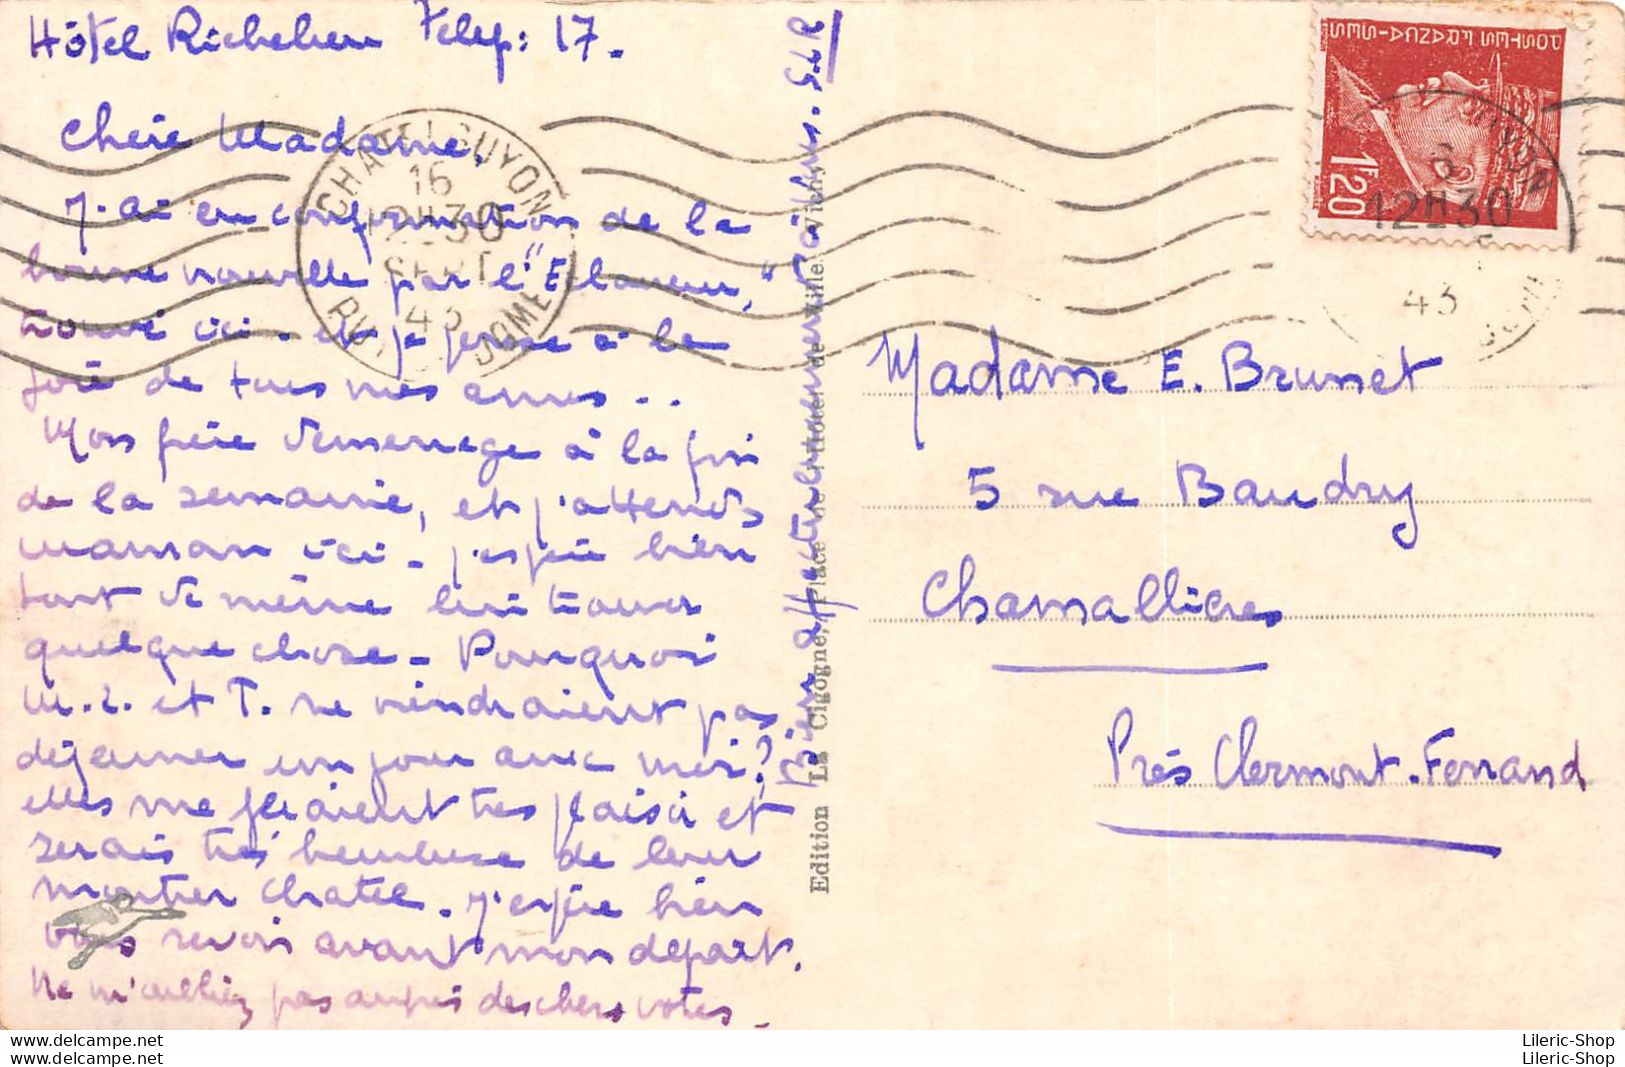 CHÂTEL GUYON (63) Cpsm 1943 Timbre Pétain - Avenue Baraduc Hôtel Richelieu - Kiosque à Journaux - Éd. La Cigogne - Châtel-Guyon